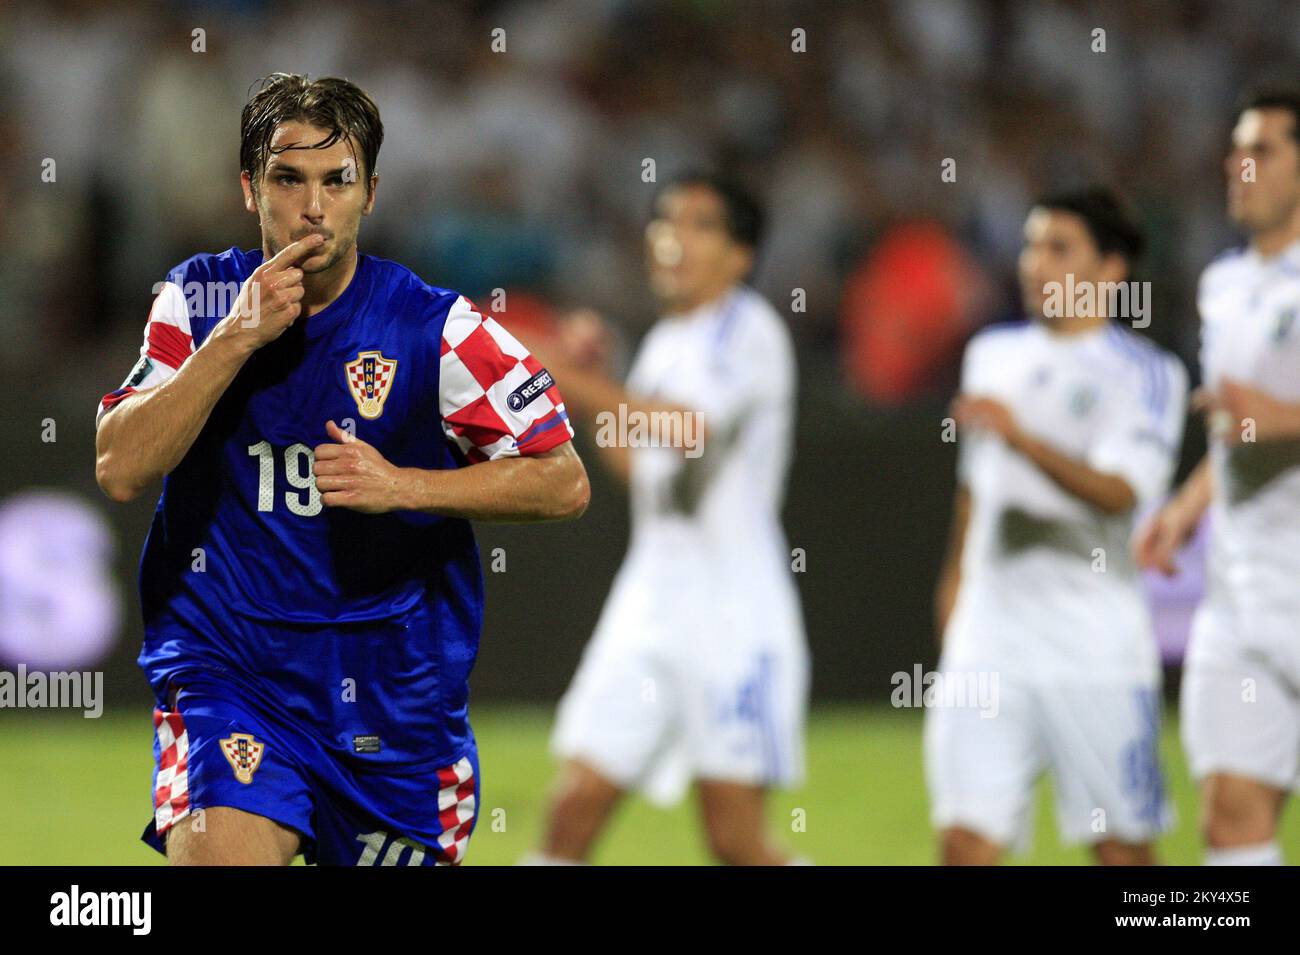 Croatia's Niko Kranjcar celebrates scoring a goal. Stock Photo